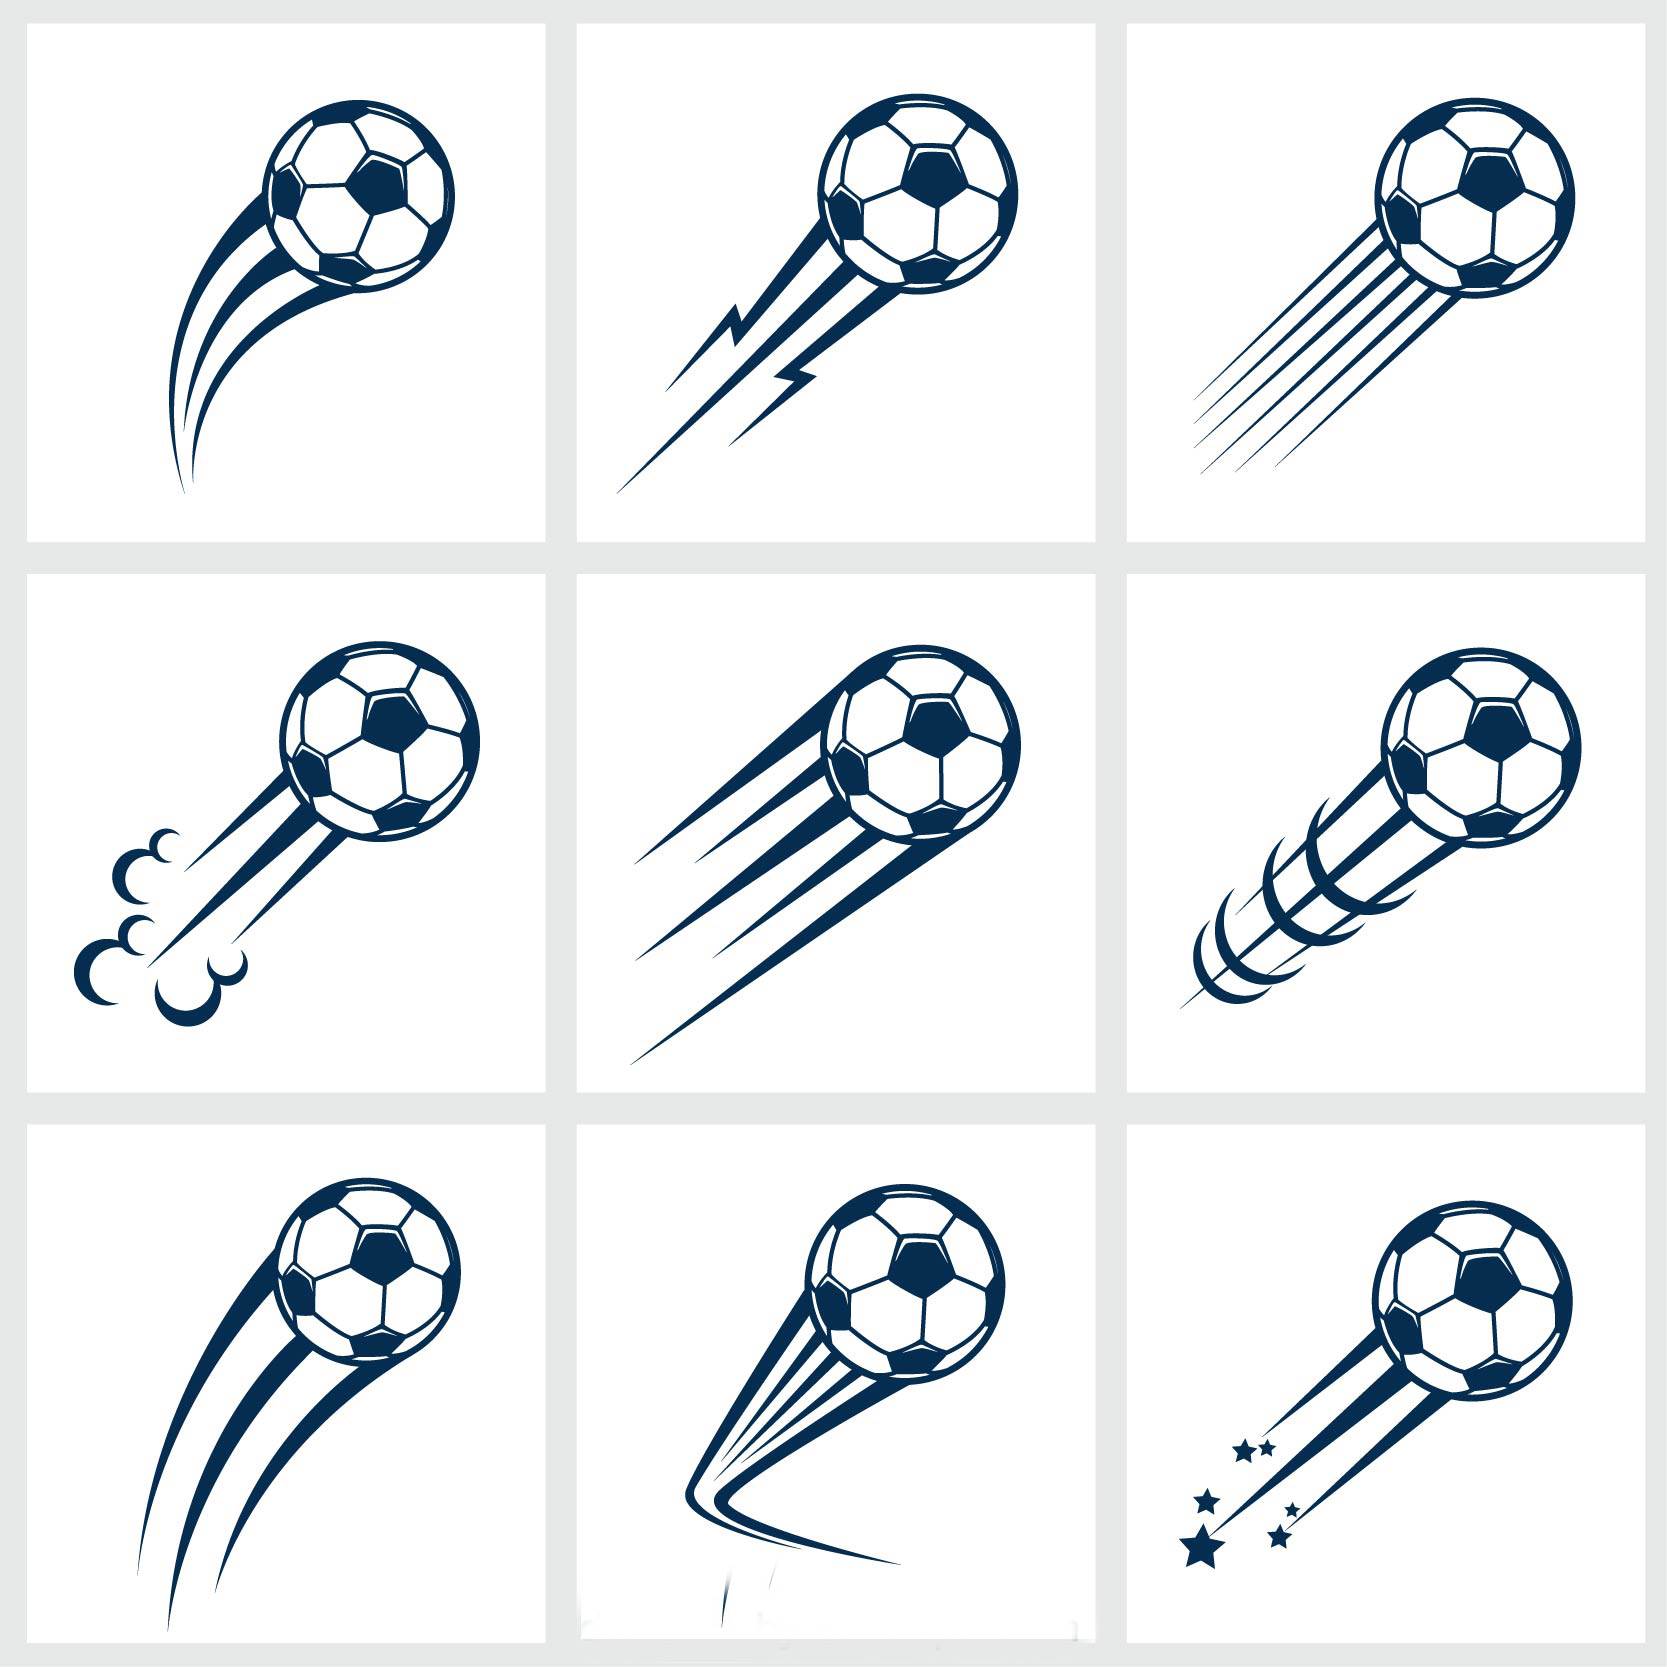 世界杯足球网简笔画素材 世界杯足球网简笔画素材图 - 第 3 - 水彩迷